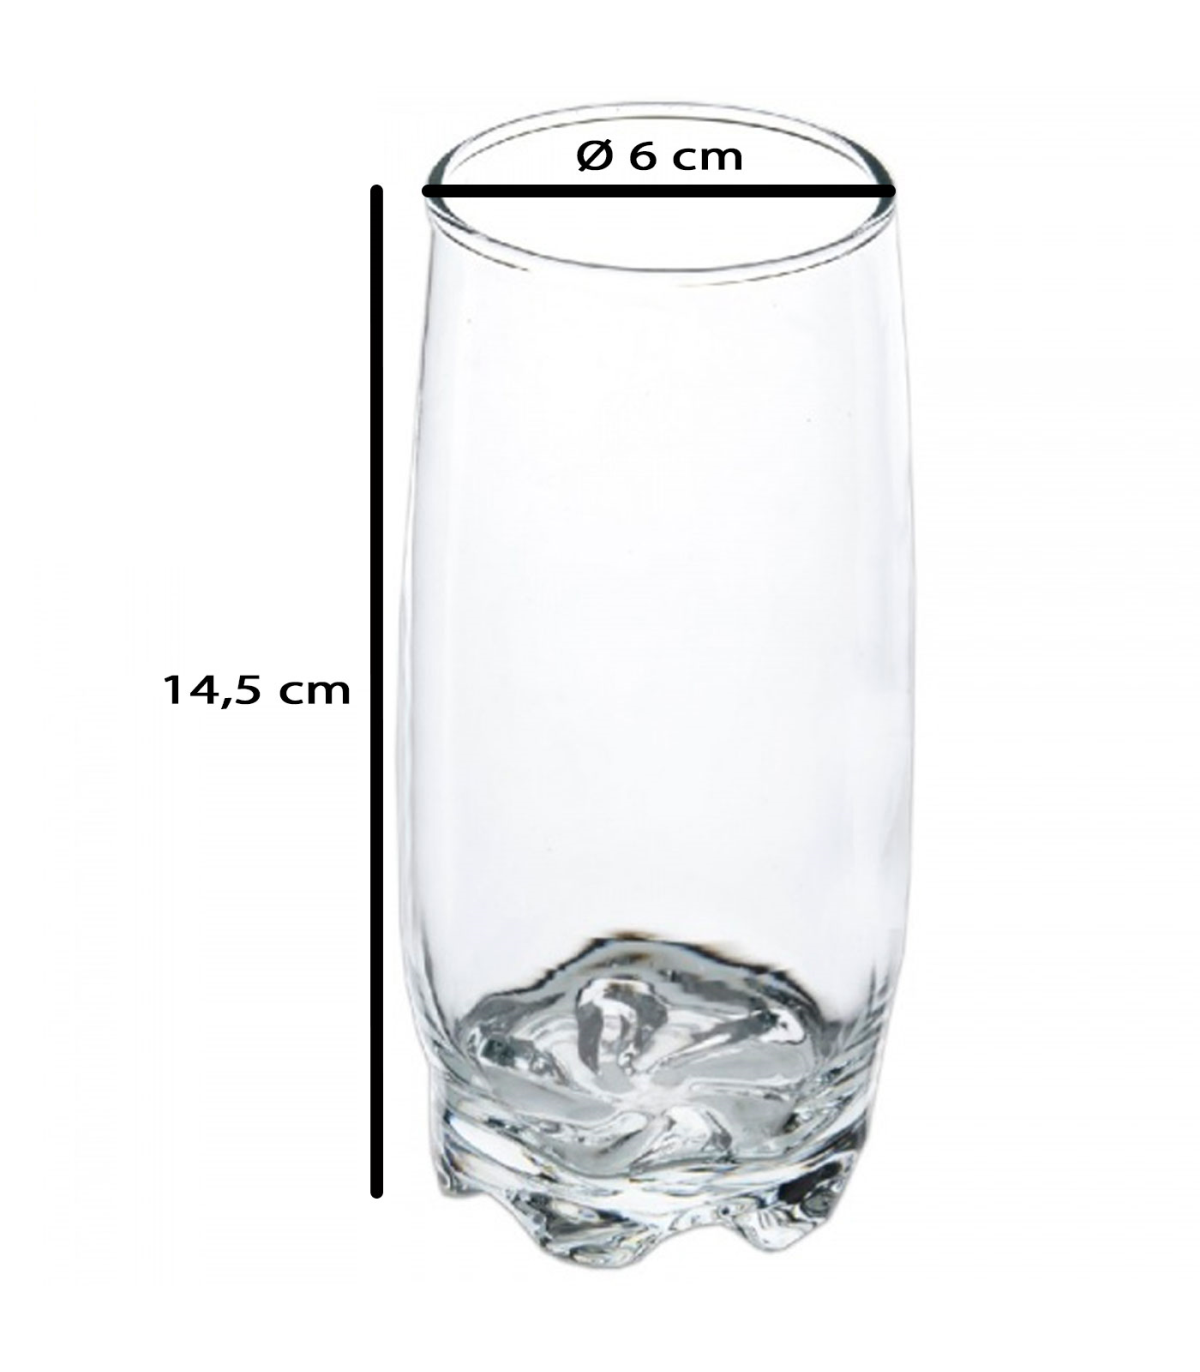  Elegante juego de vasos de cristal con 4 vasos altos